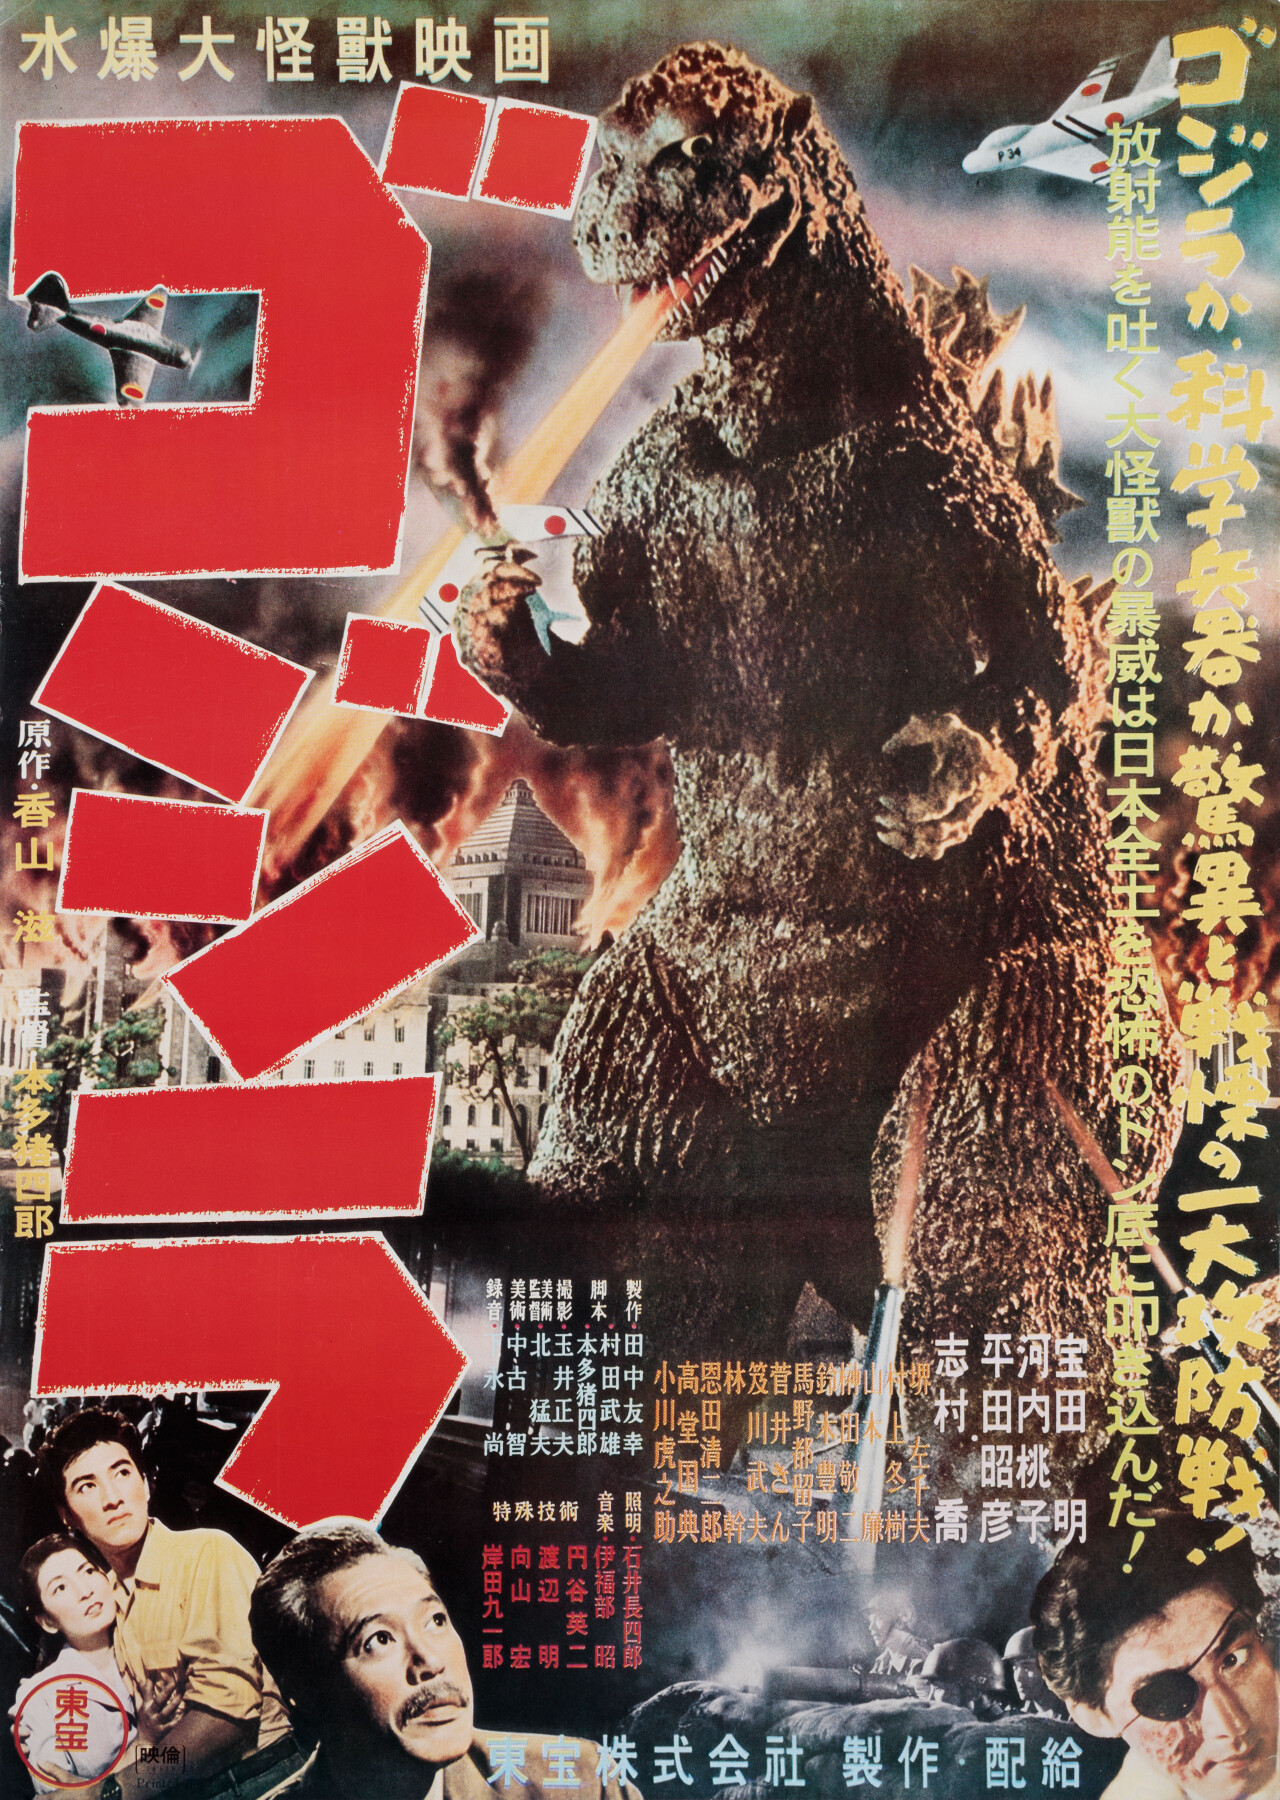 Годзилла (Godzilla, 1954), режиссёр Иширо Хонда, японский постер к фильму (монстры, 1976 год)